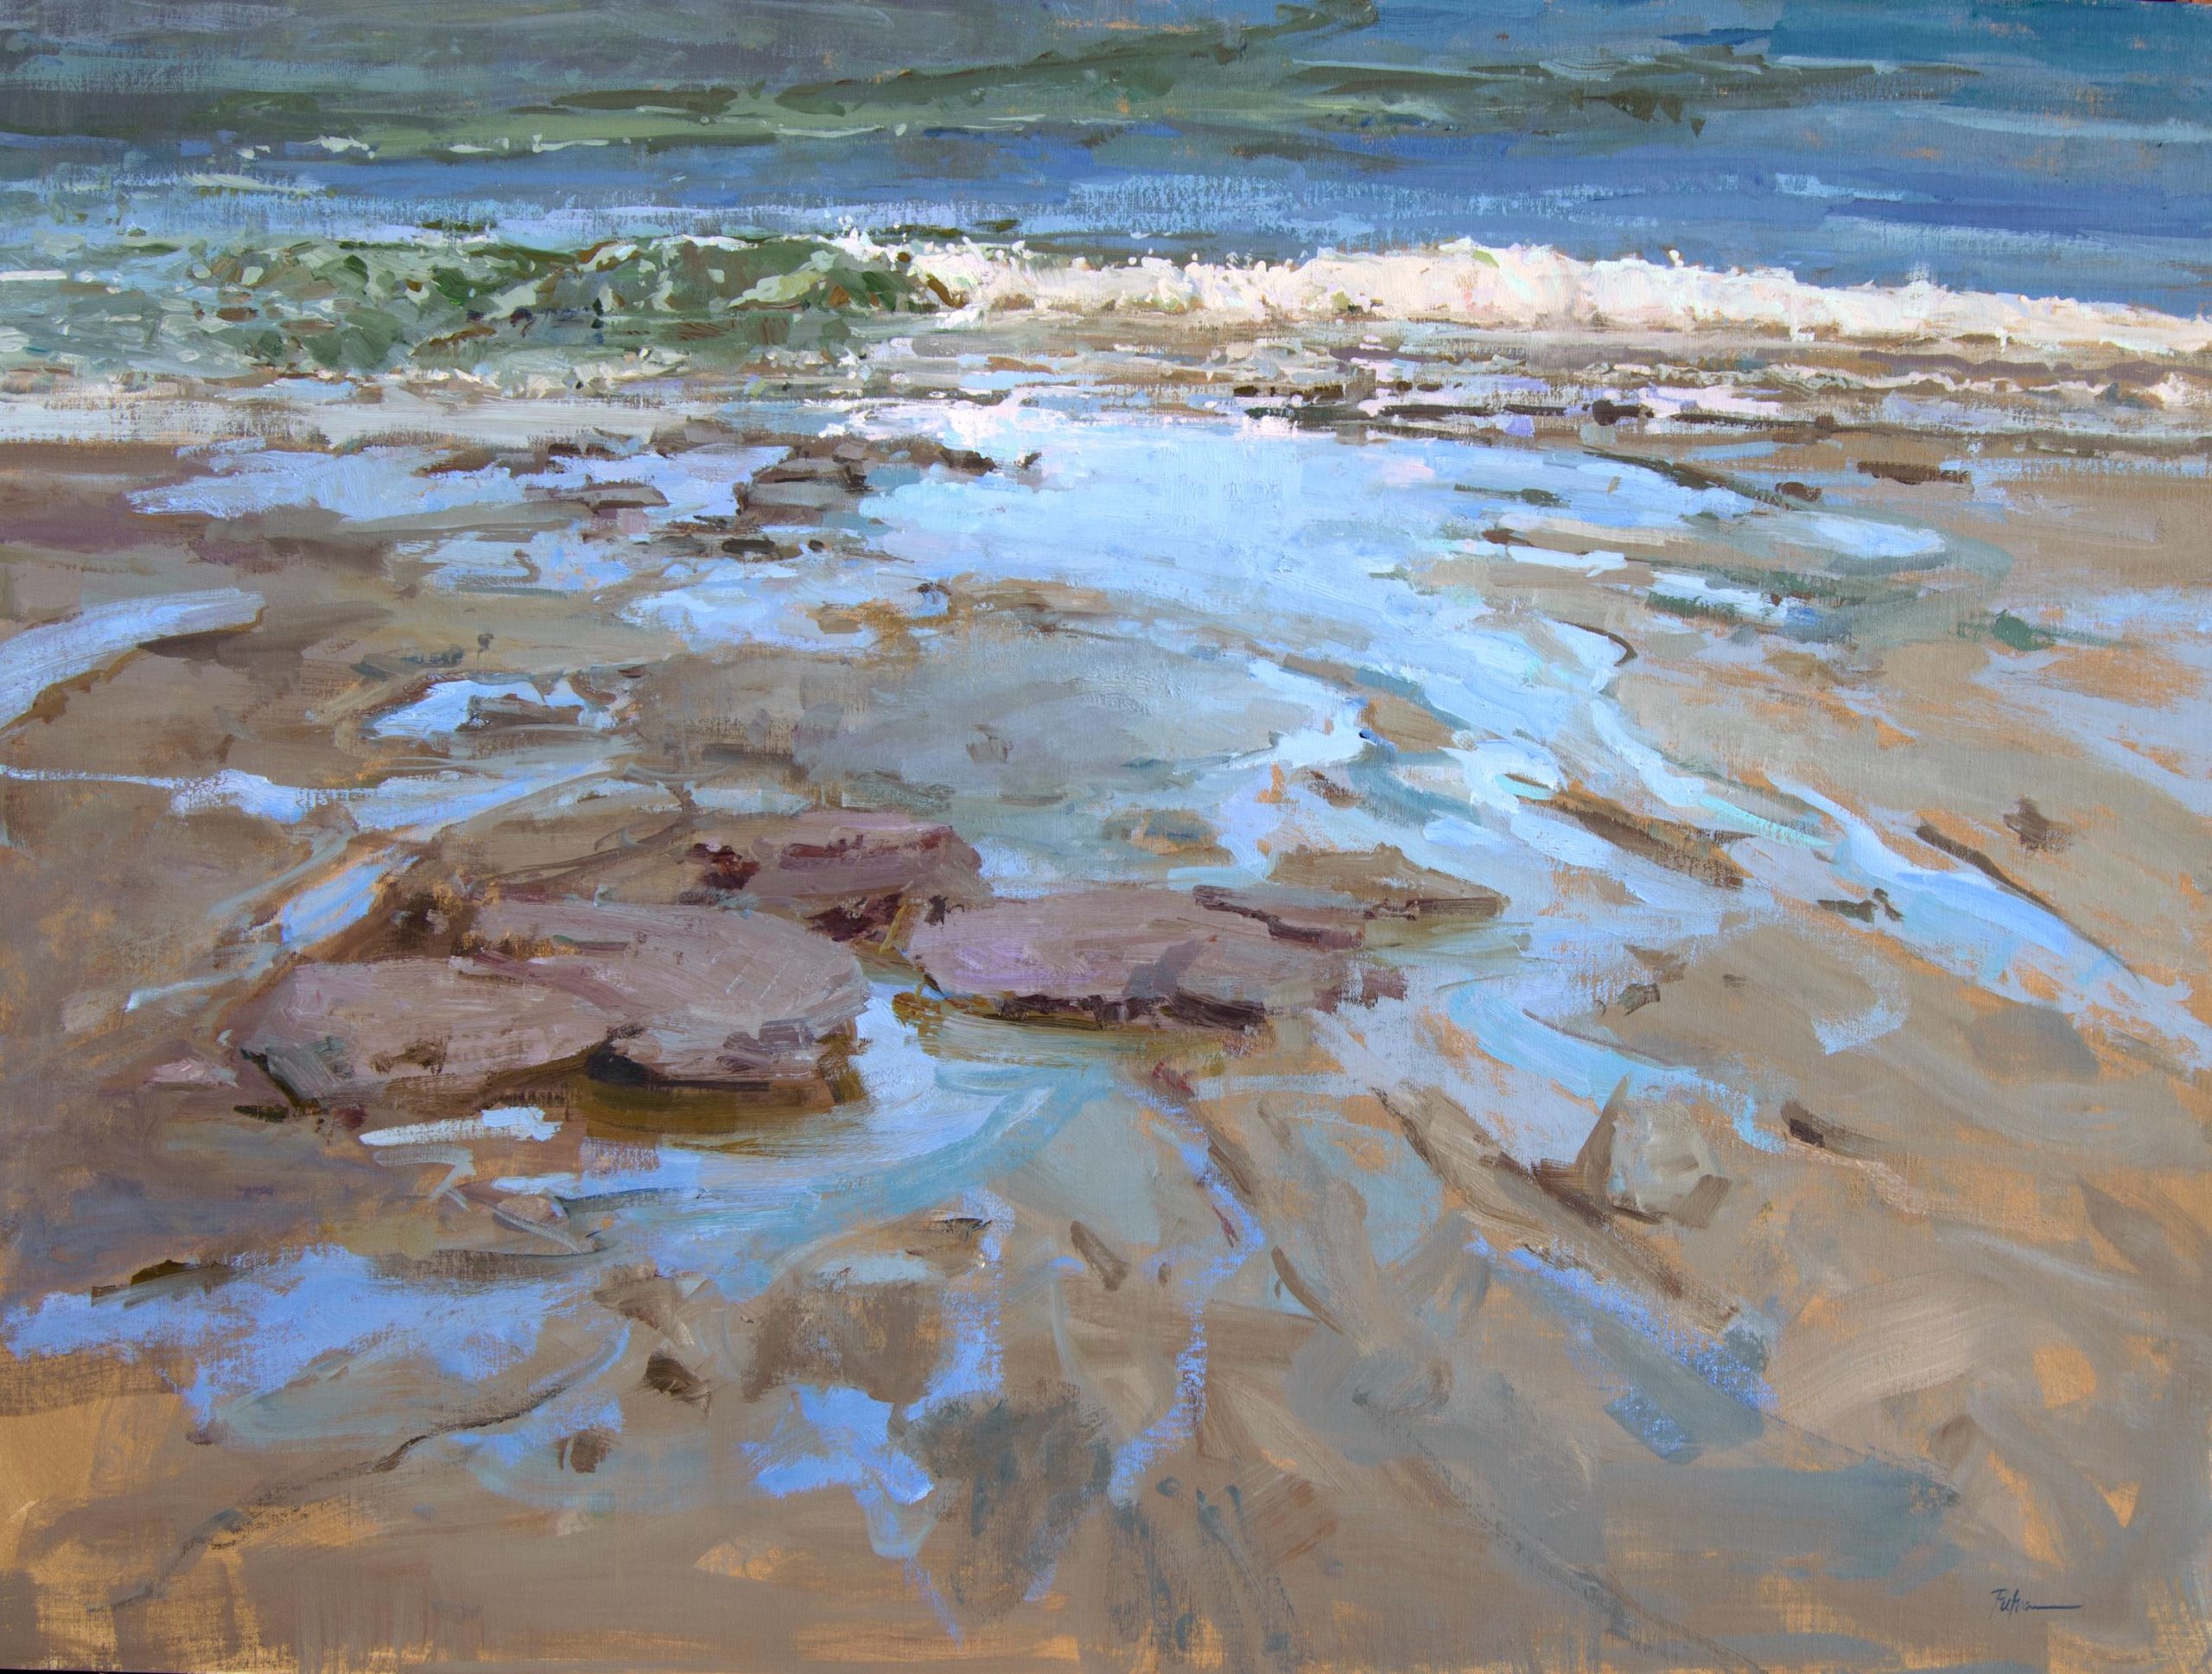 Lori Putnam, "Tidal," 36 x 48 in.